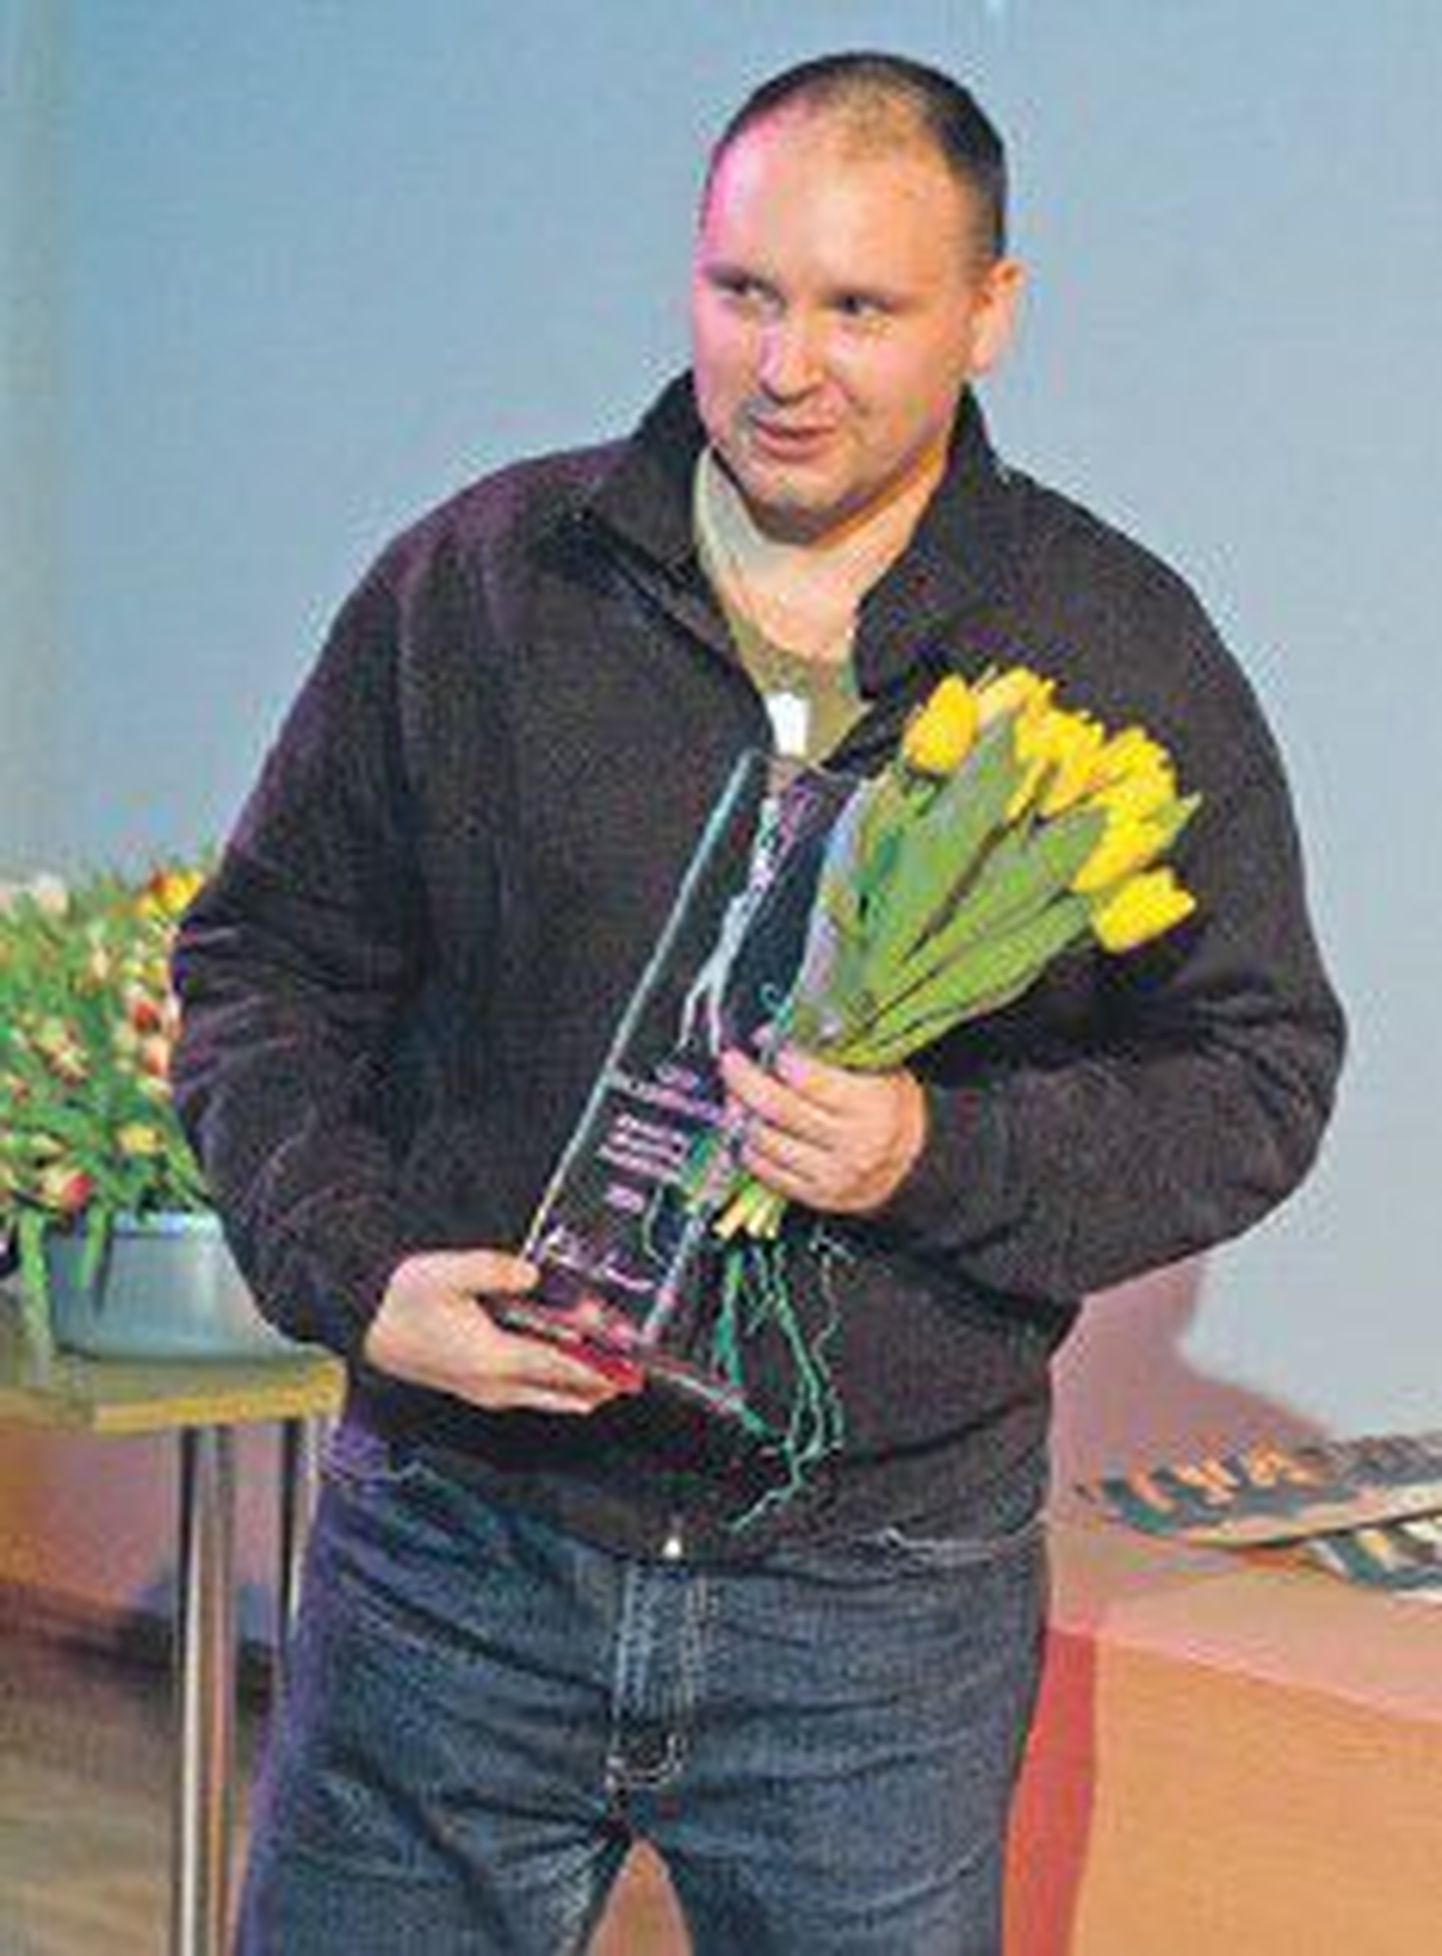 Андрей Иванов получает в марте 2010 года премию Капитала культуры в категории «Проза» за книгу «Путешествие Ханумана на Лоллоланд».